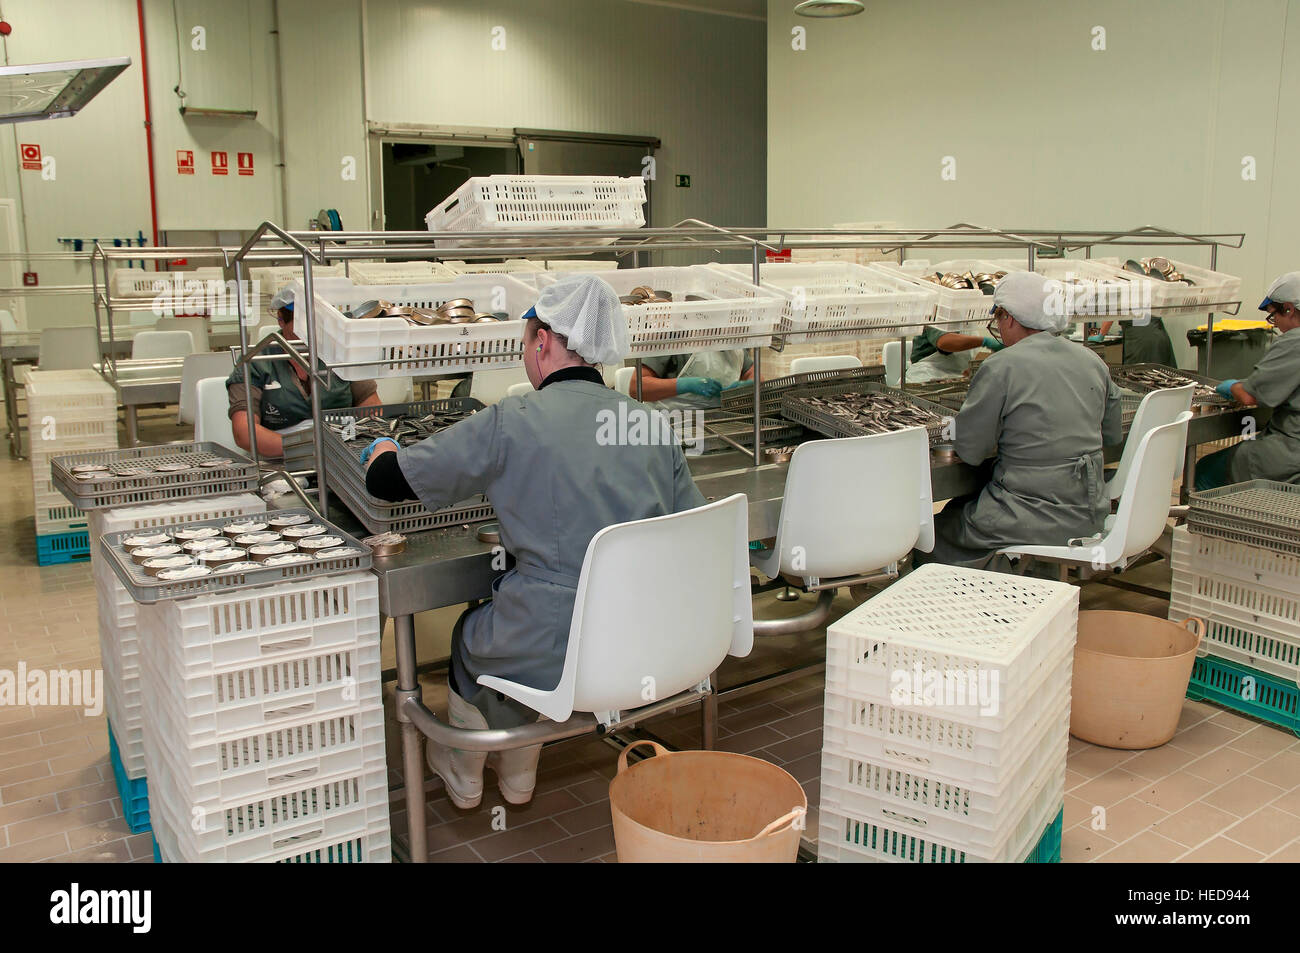 L'industrie de la conserve de poisson, Cambados, Pontevedra province, région de la Galice, Espagne, Europe Banque D'Images